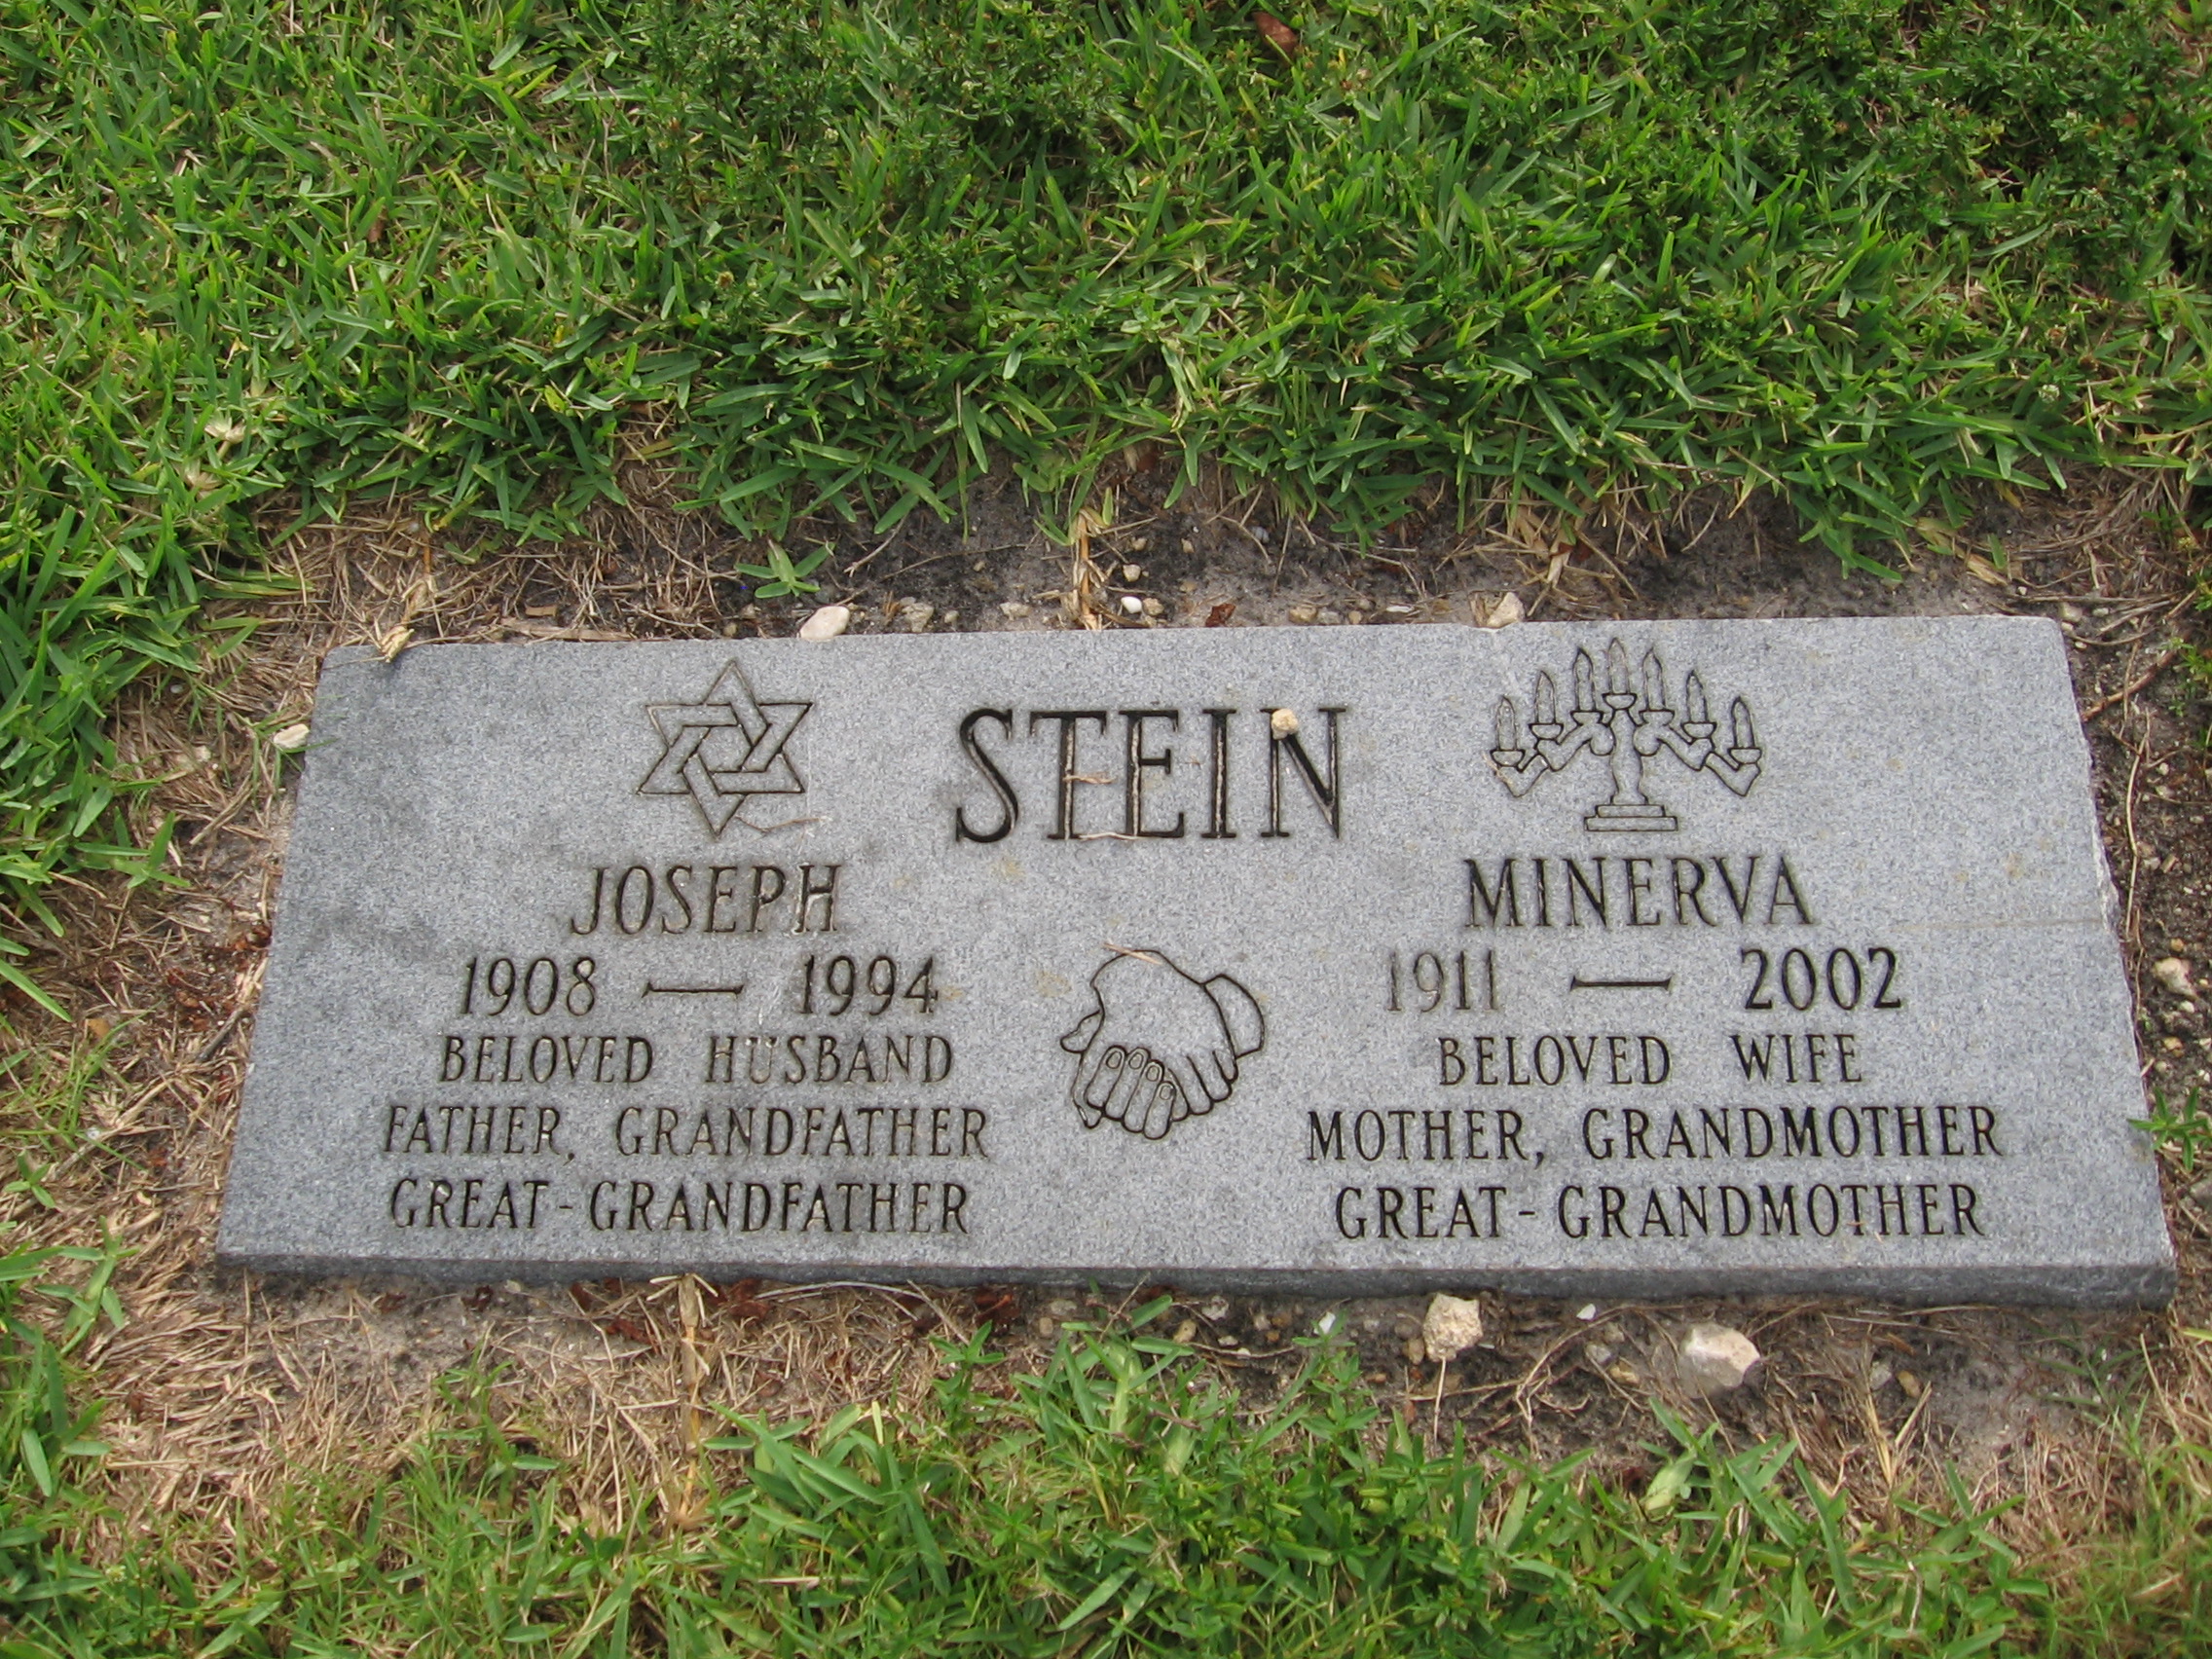 Joseph Stein